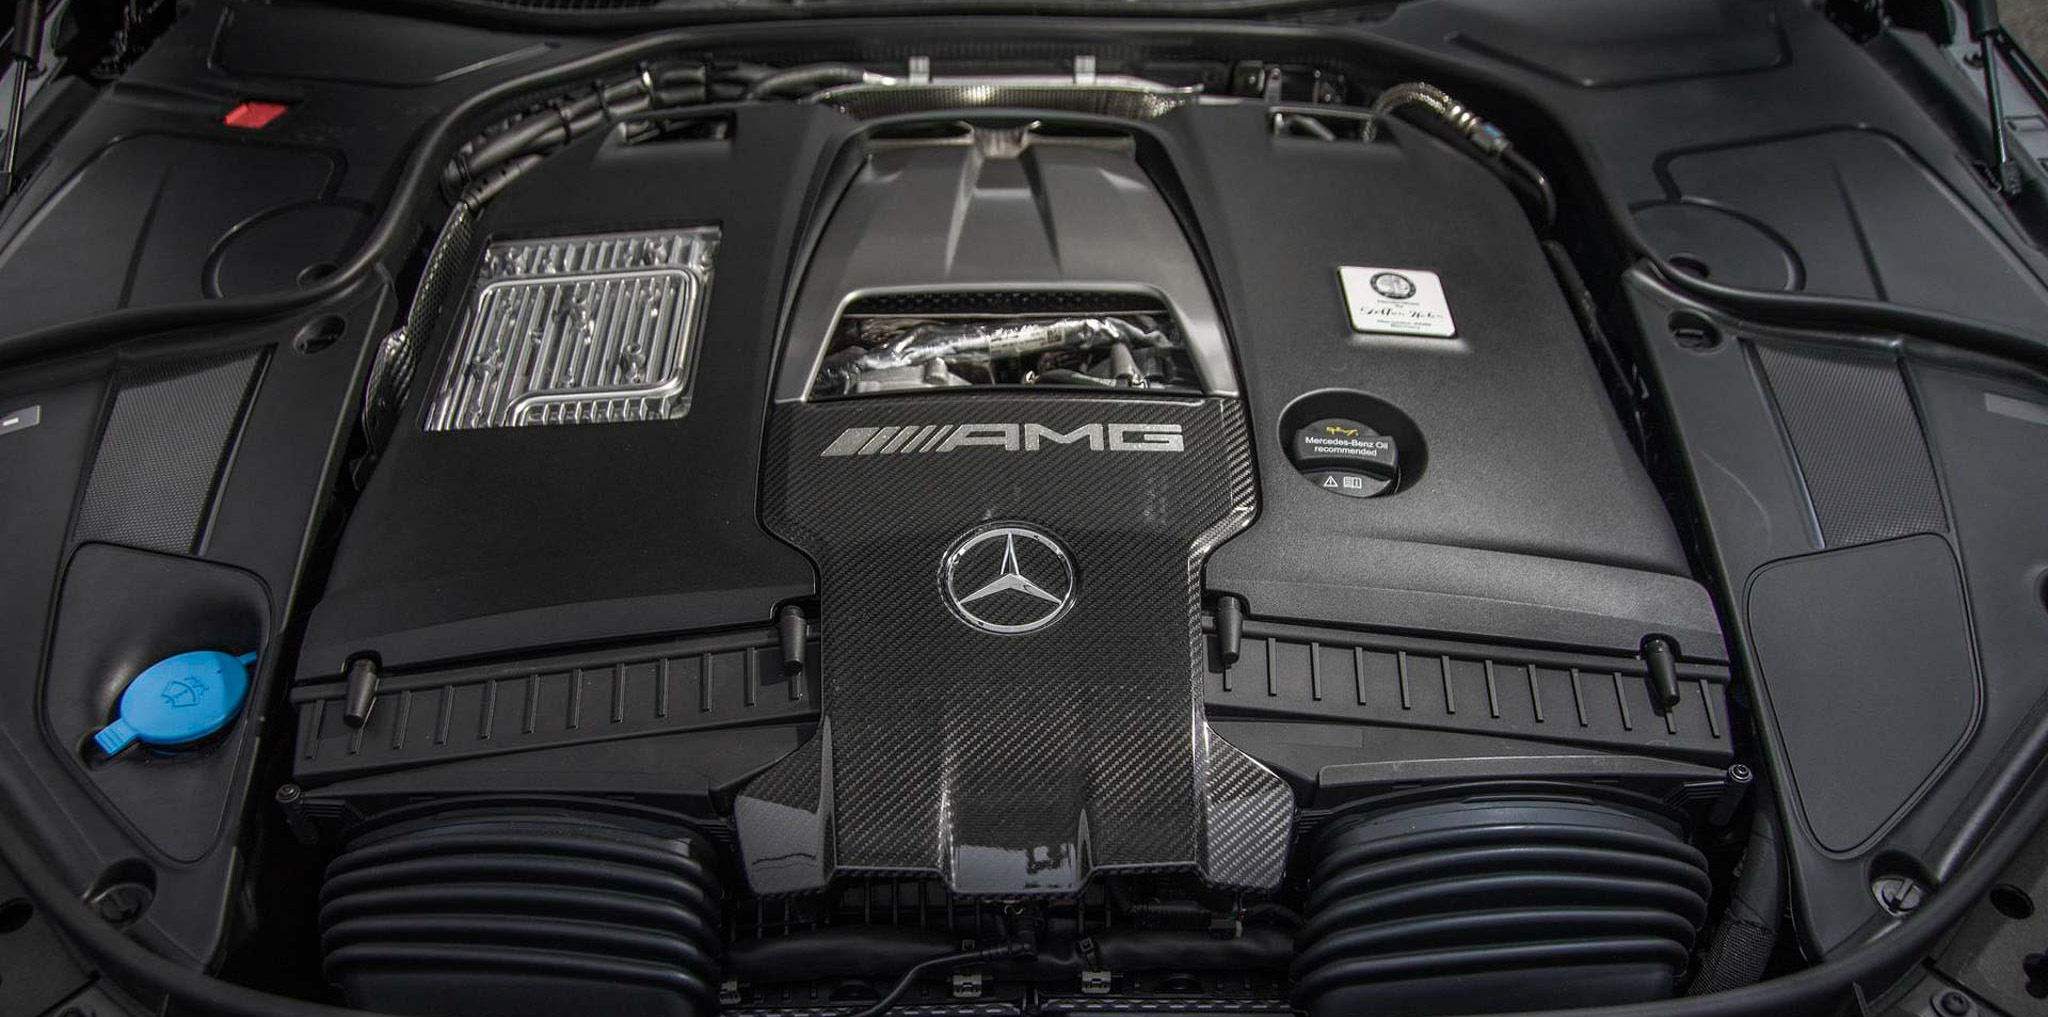 Mercedes-Benz xác nhận động cơ V12 vẫn tồn tại trên S-Class thế hệ mới